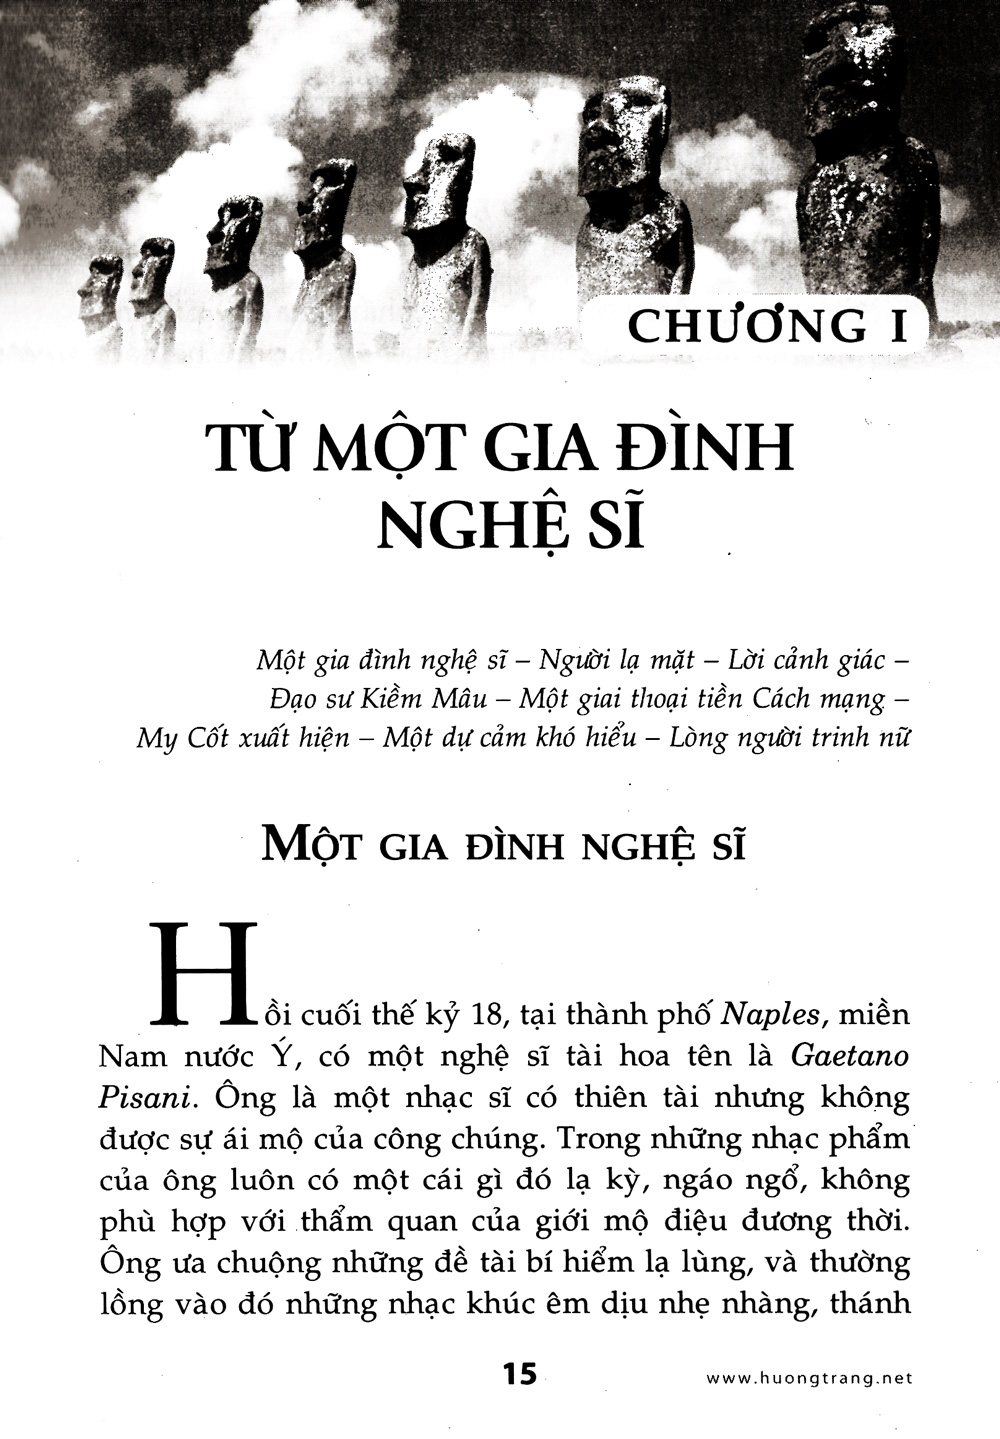 Tủ Sách Huyền Môn - Tây Phương Huyền Bí PDF